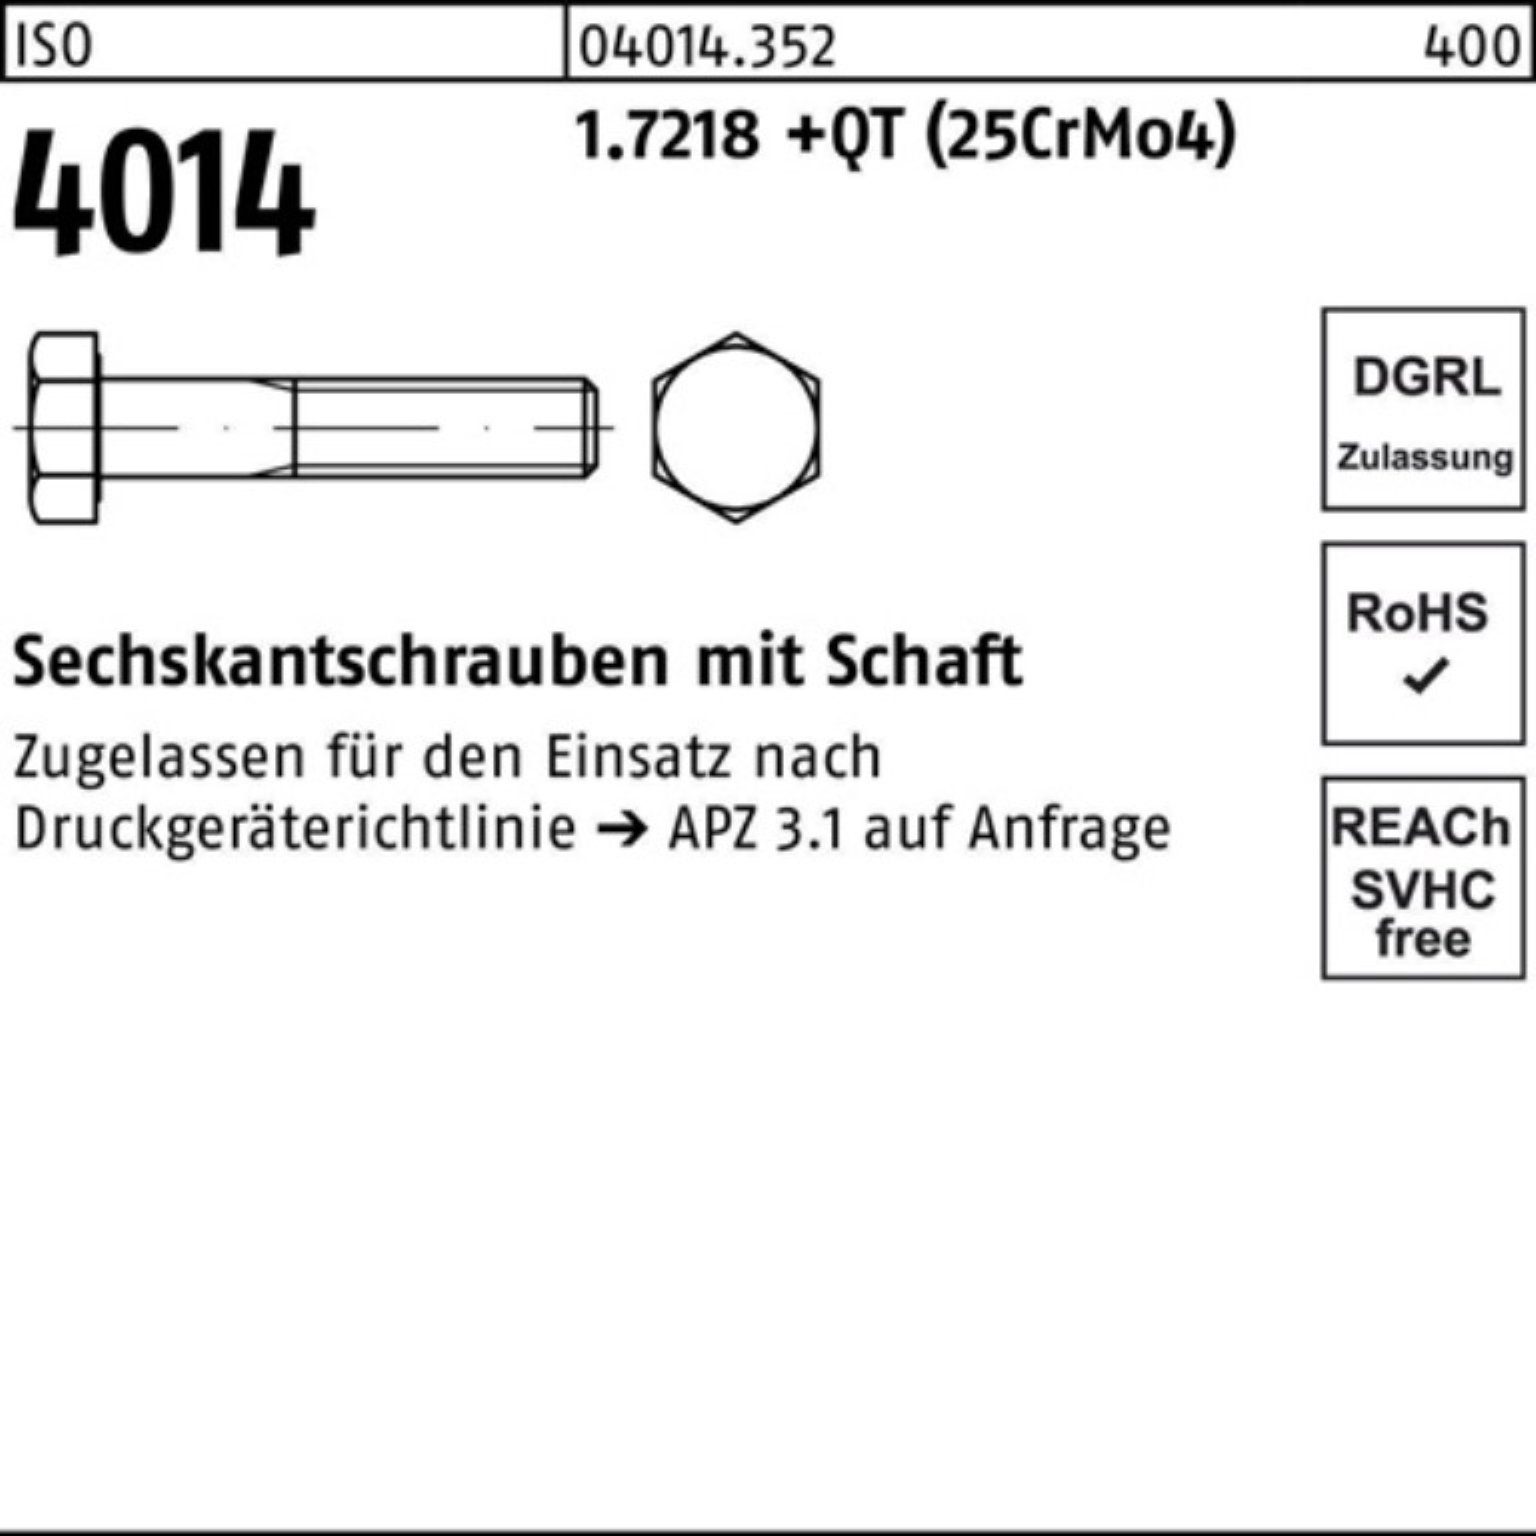 ISO M16x Pack Sechskantschraube Bufab 100er Schaft 4014 Sechskantschraube +QT 70 (25CrM 1.7218